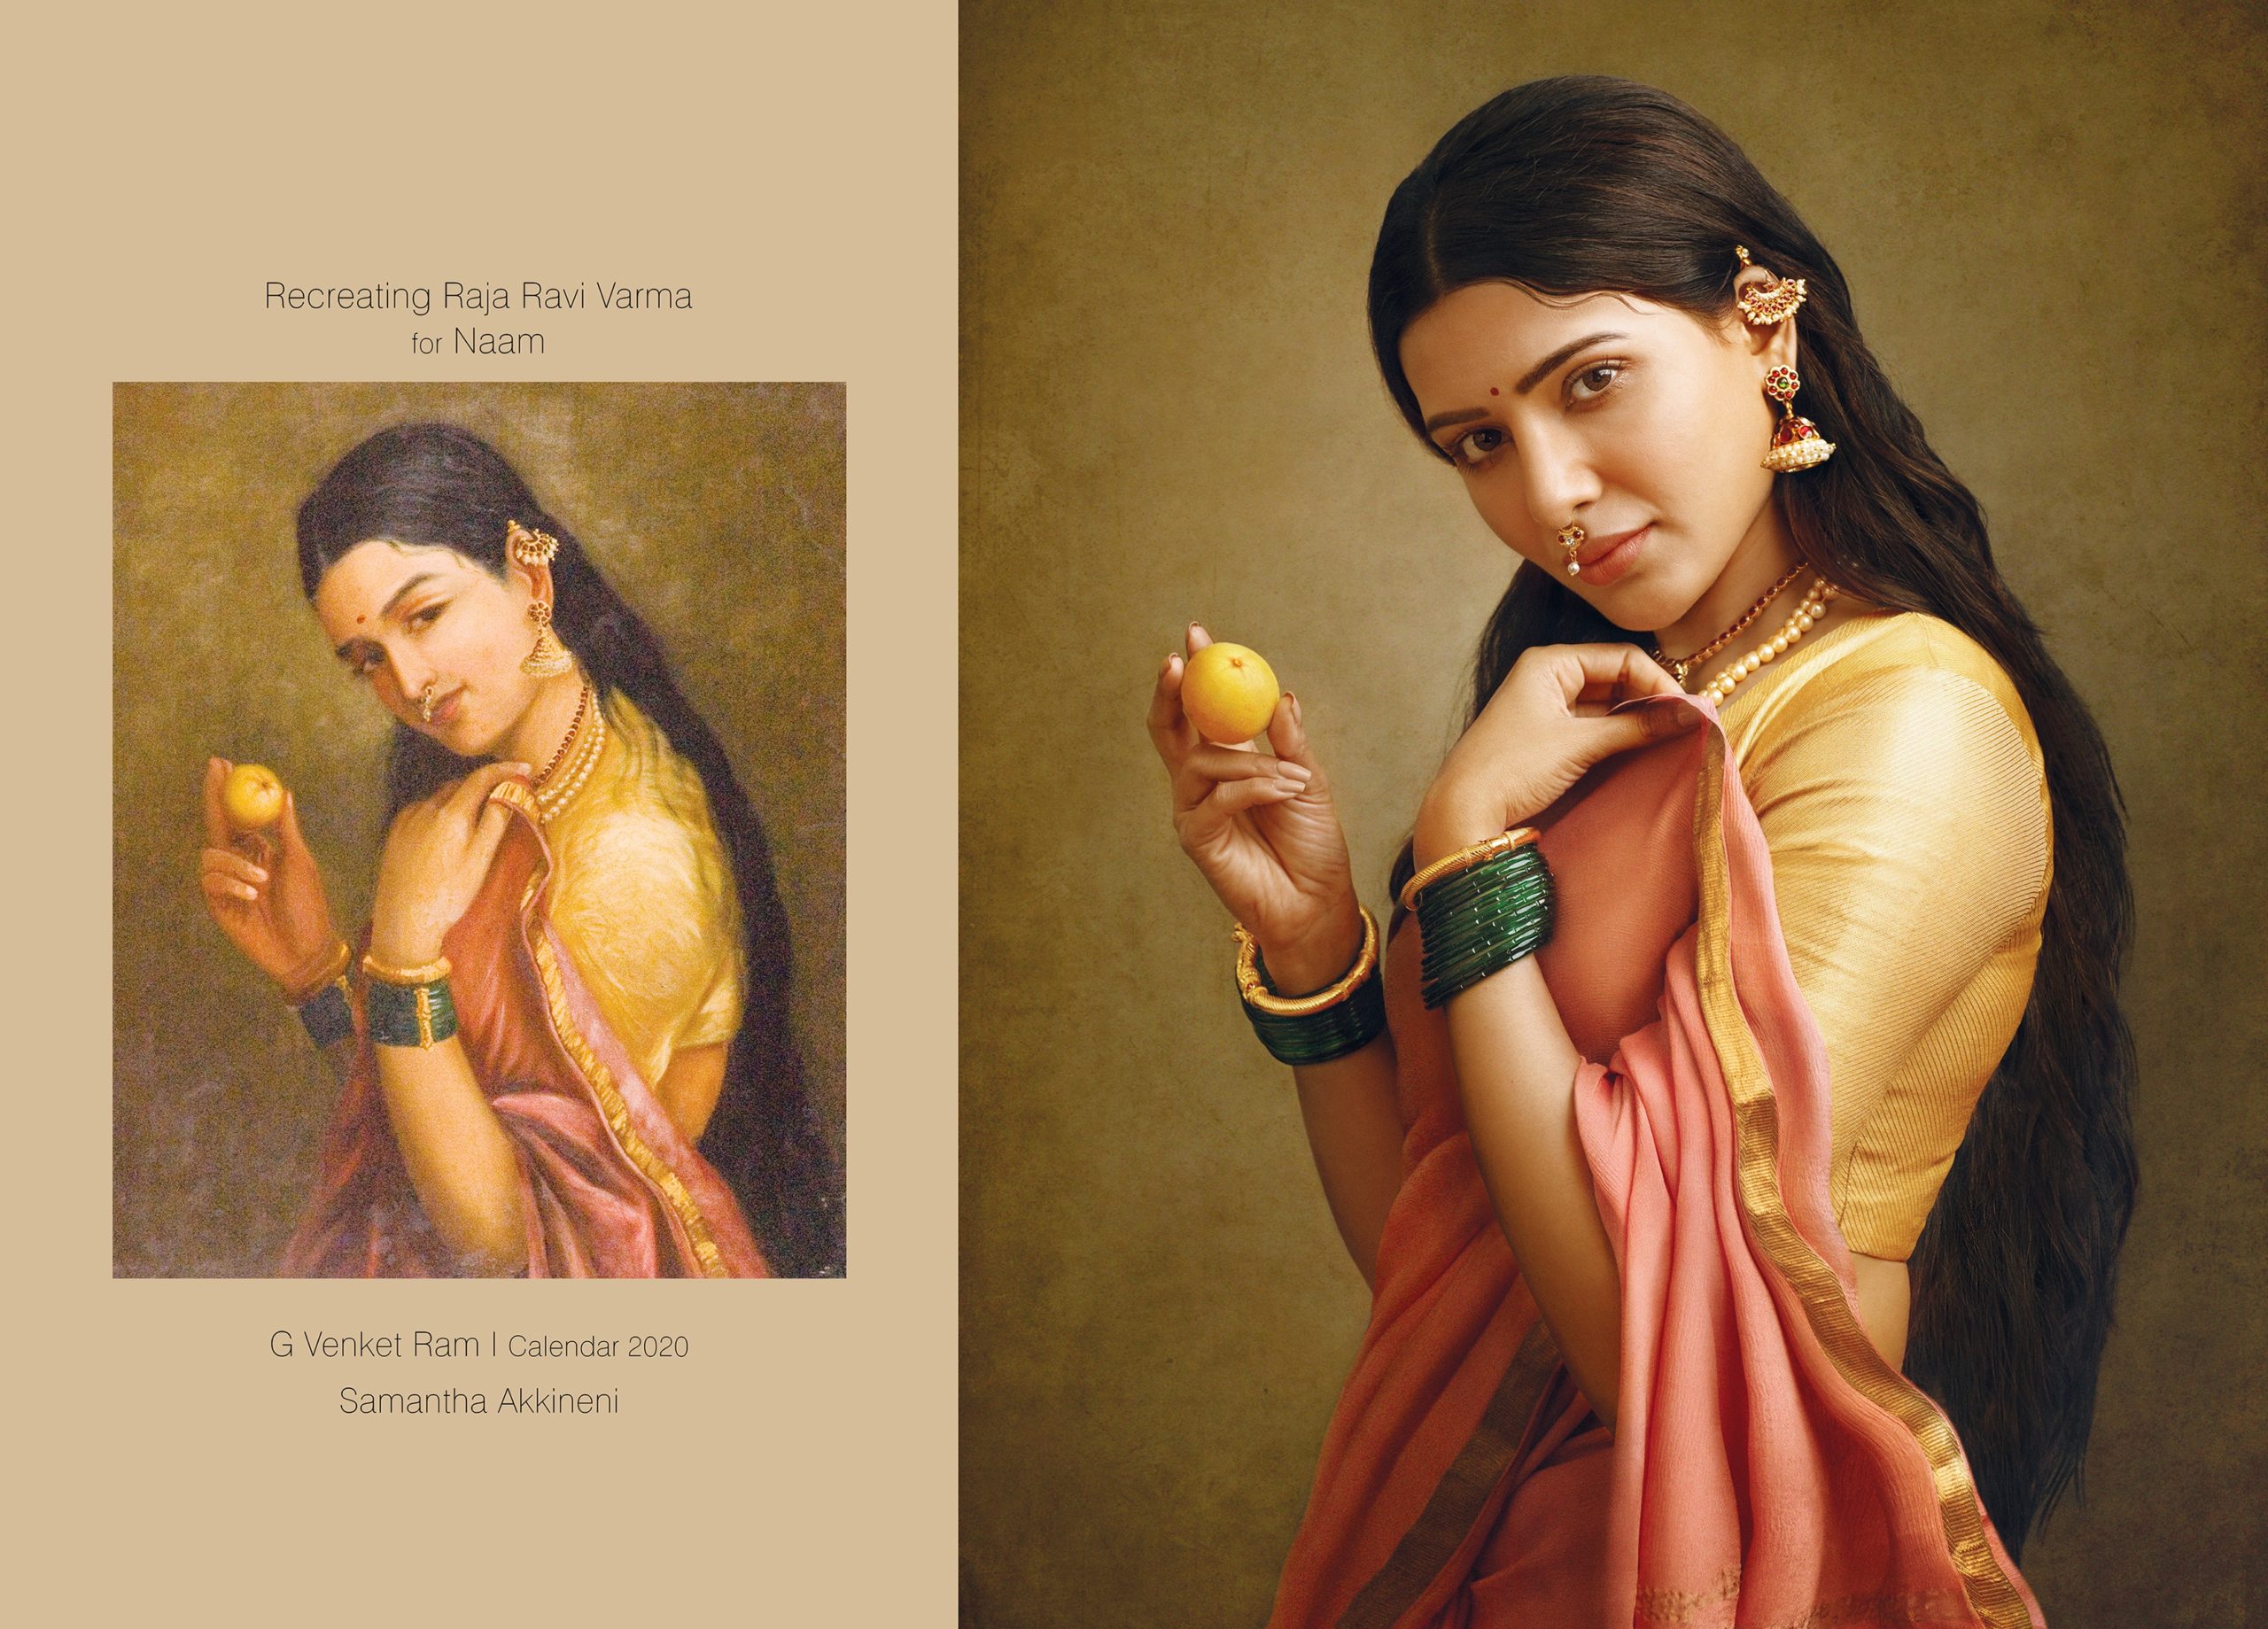 Samantha Akkineni portrait Raja Ravi Varma's painting